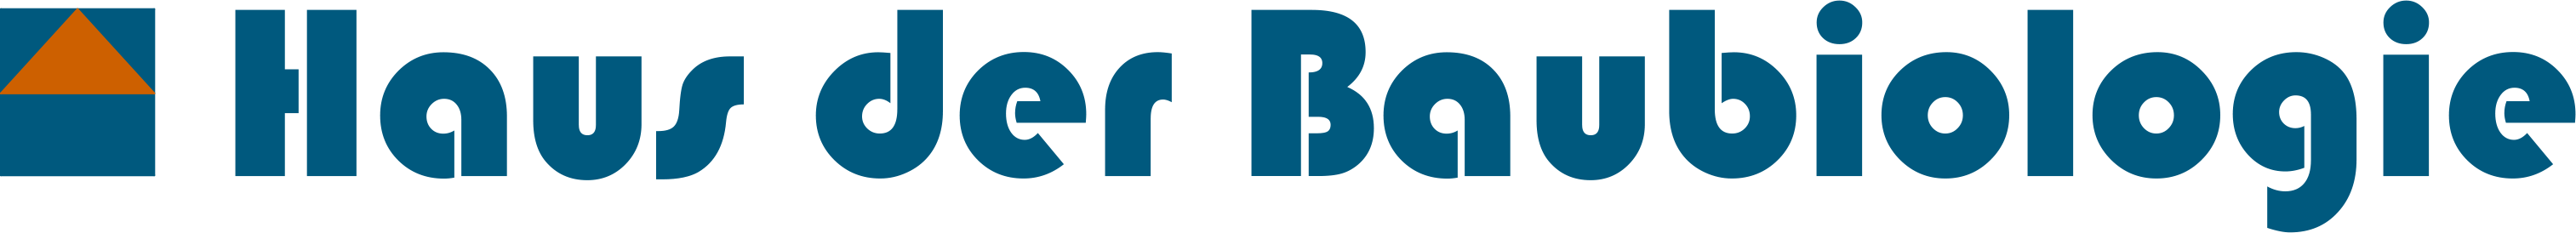 Haus der Baubiologie Logo